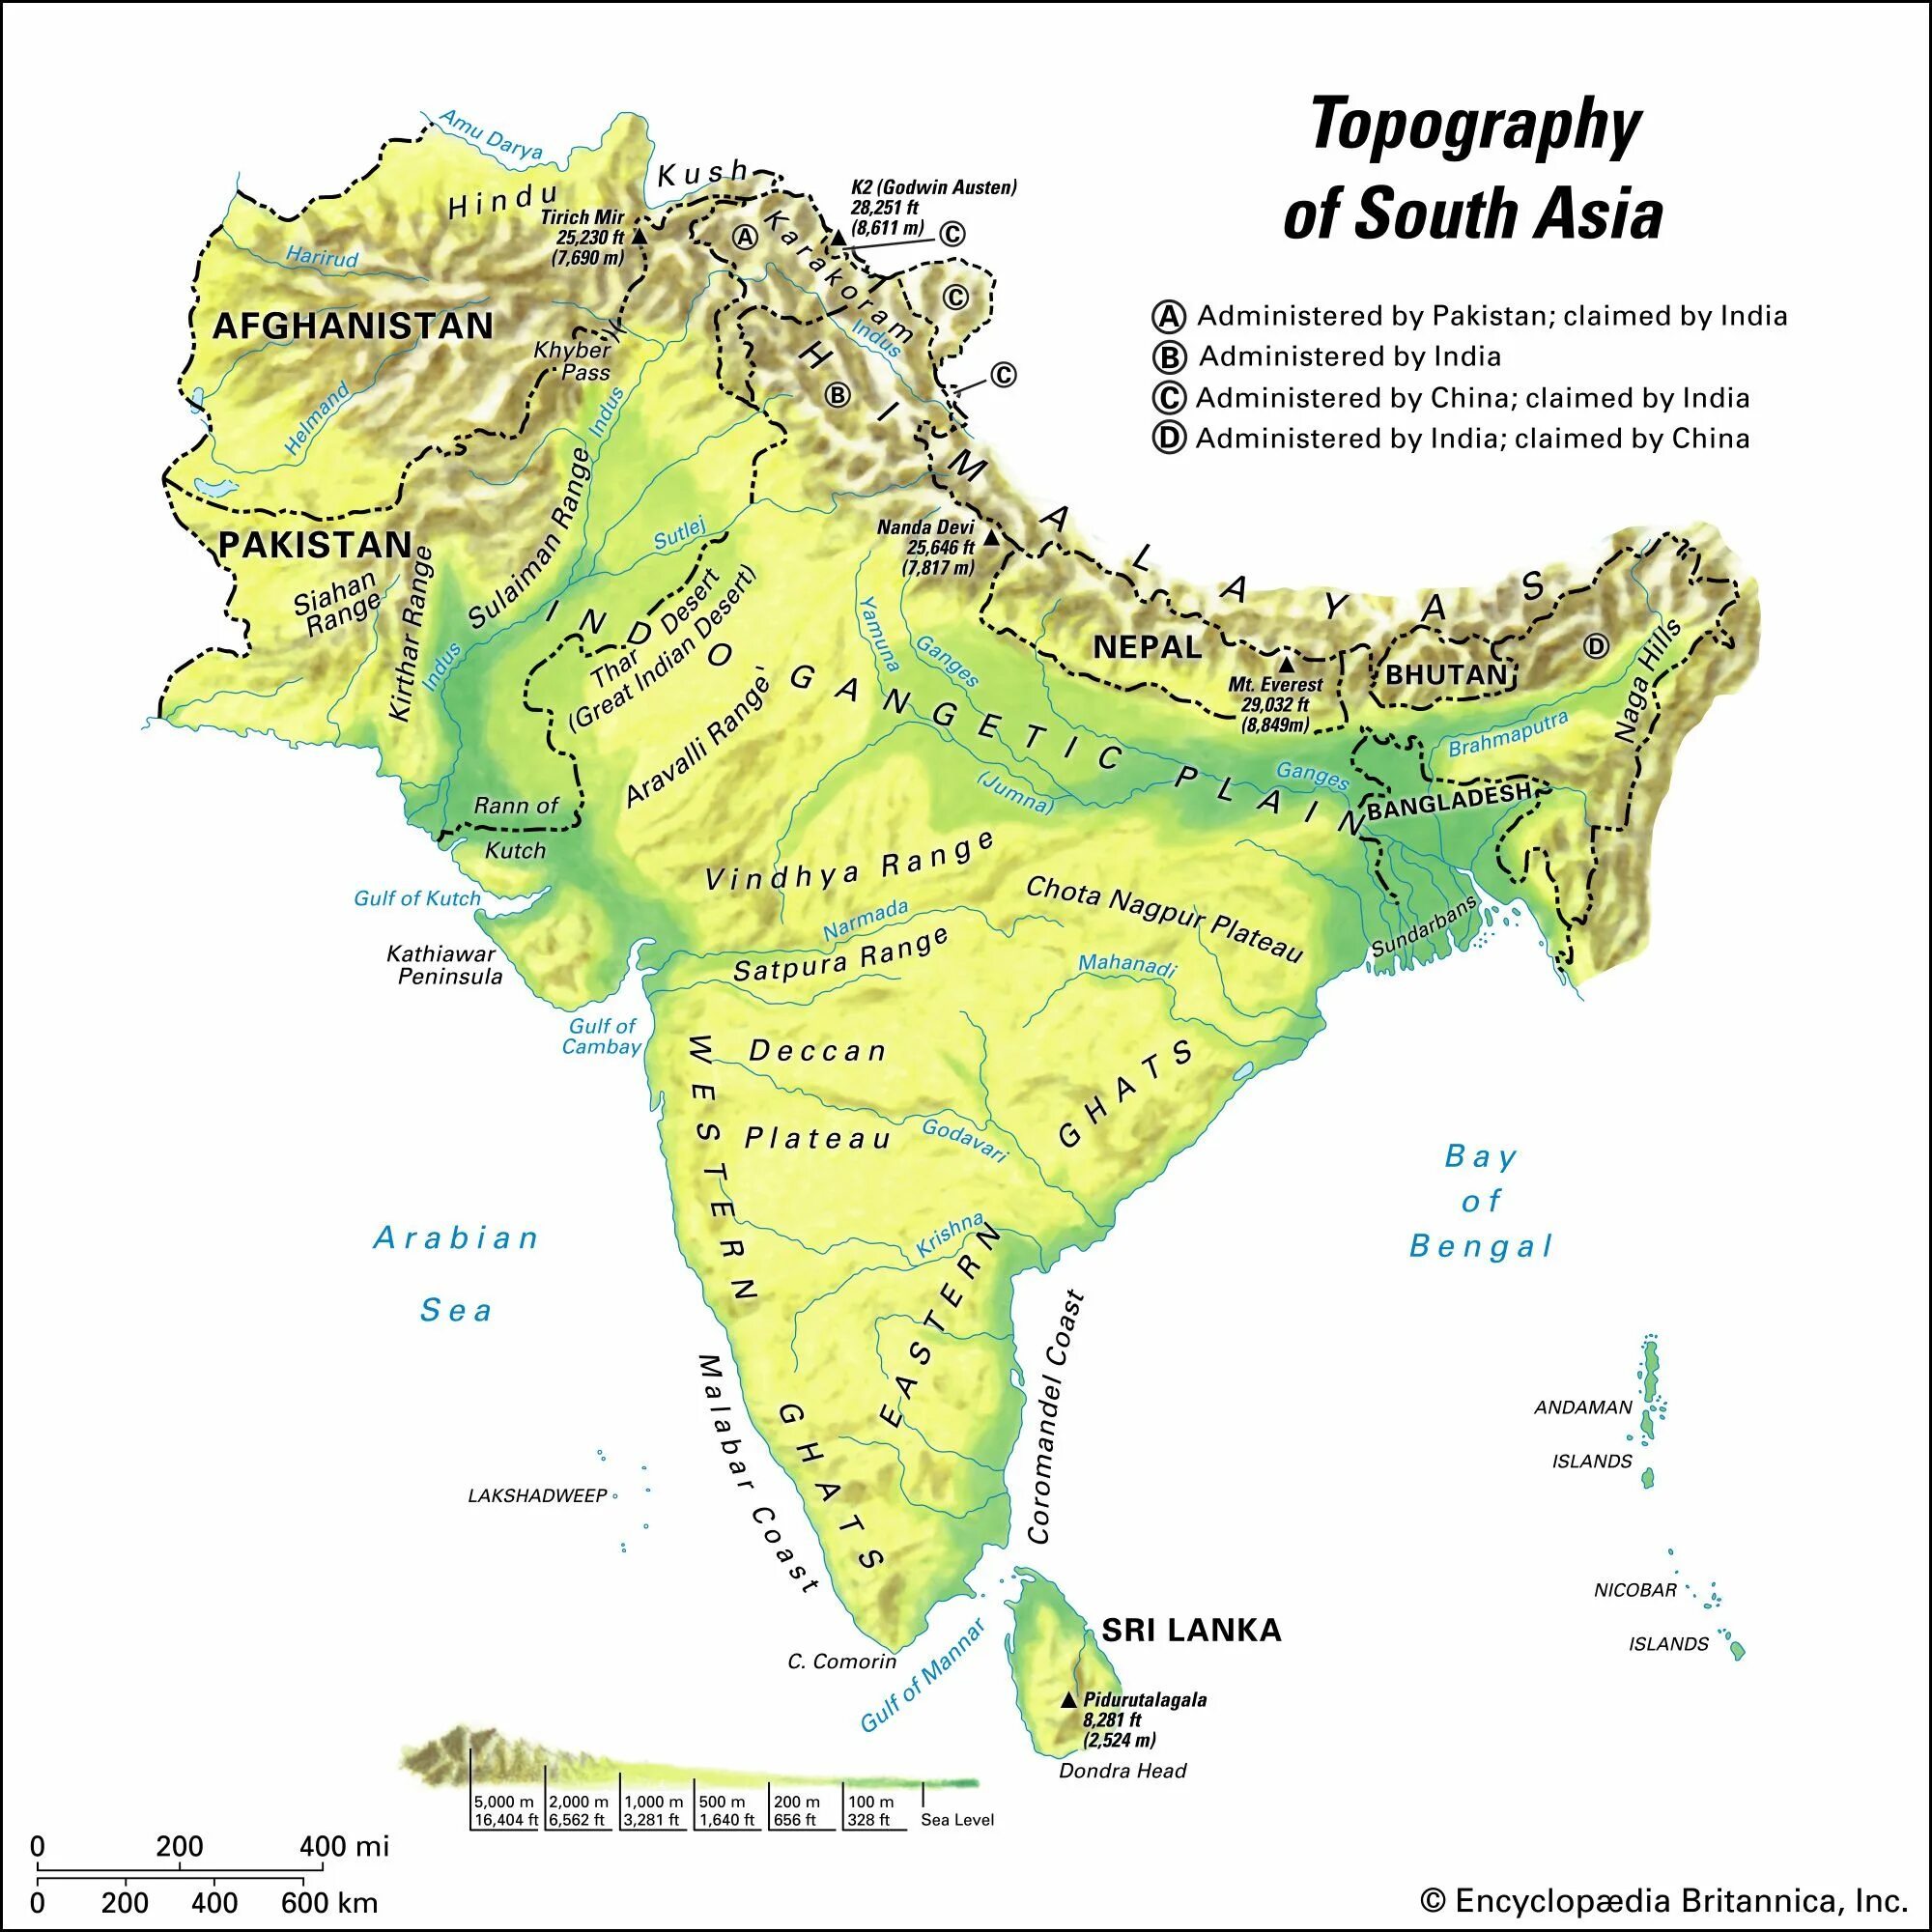 Плоскогорье декан на карте Индии. Деканское плоскогорье в Индии на карте. Рельеф Индии карта. Индостан рельеф.